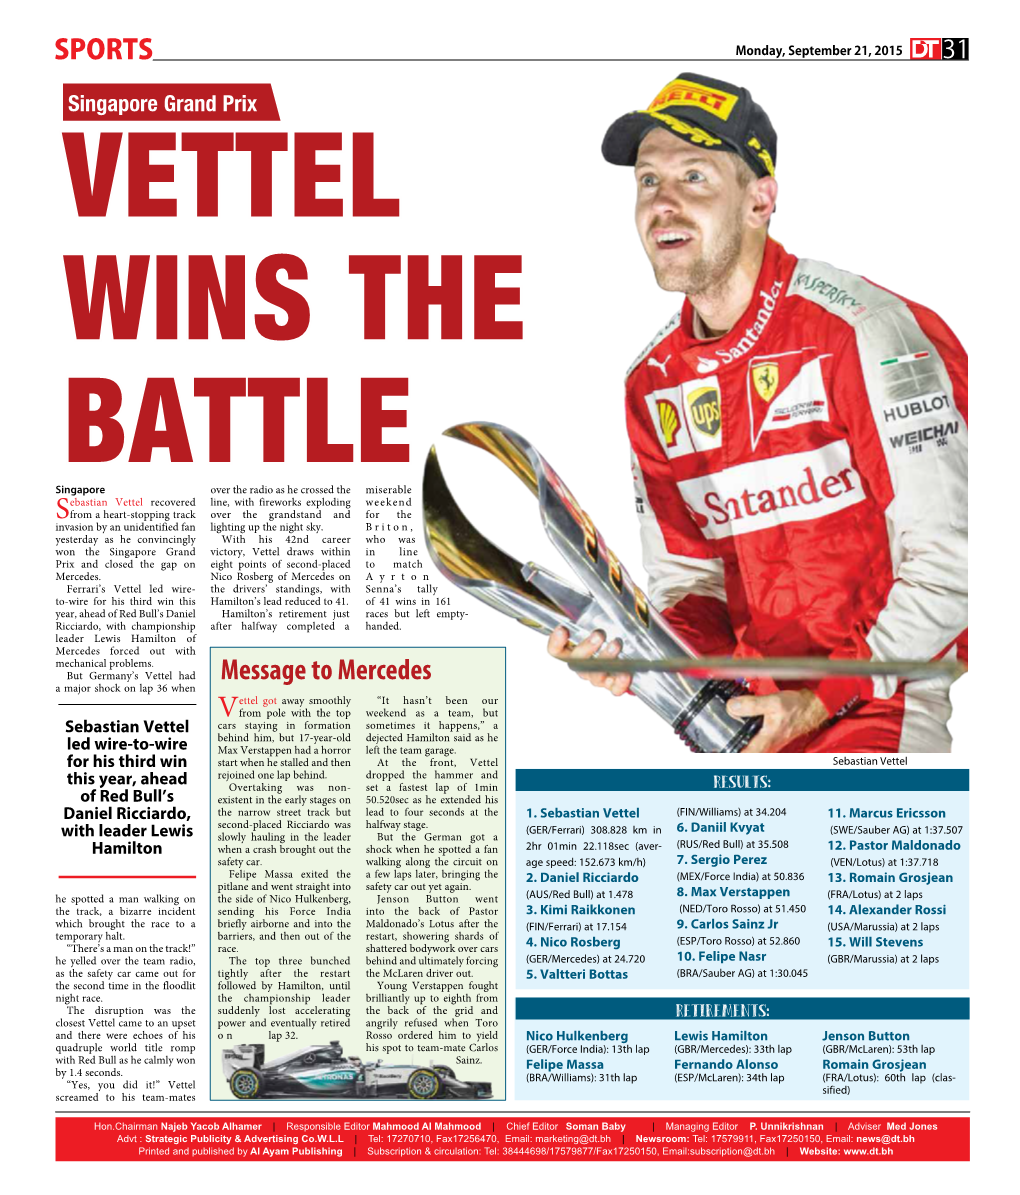 Vettel Wins the Battle